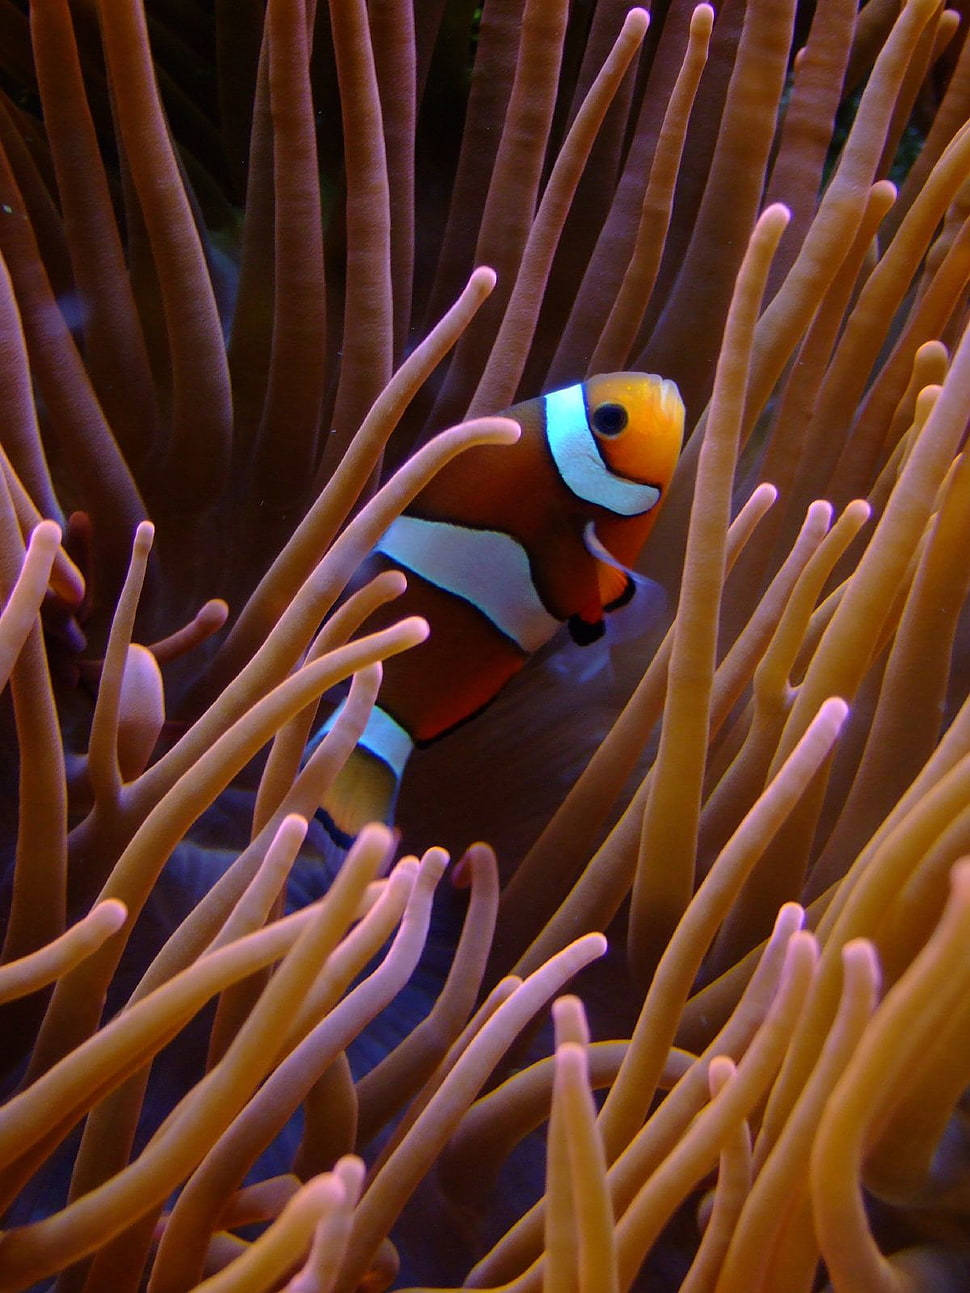 Korallenriffclownfisch. Wallpaper